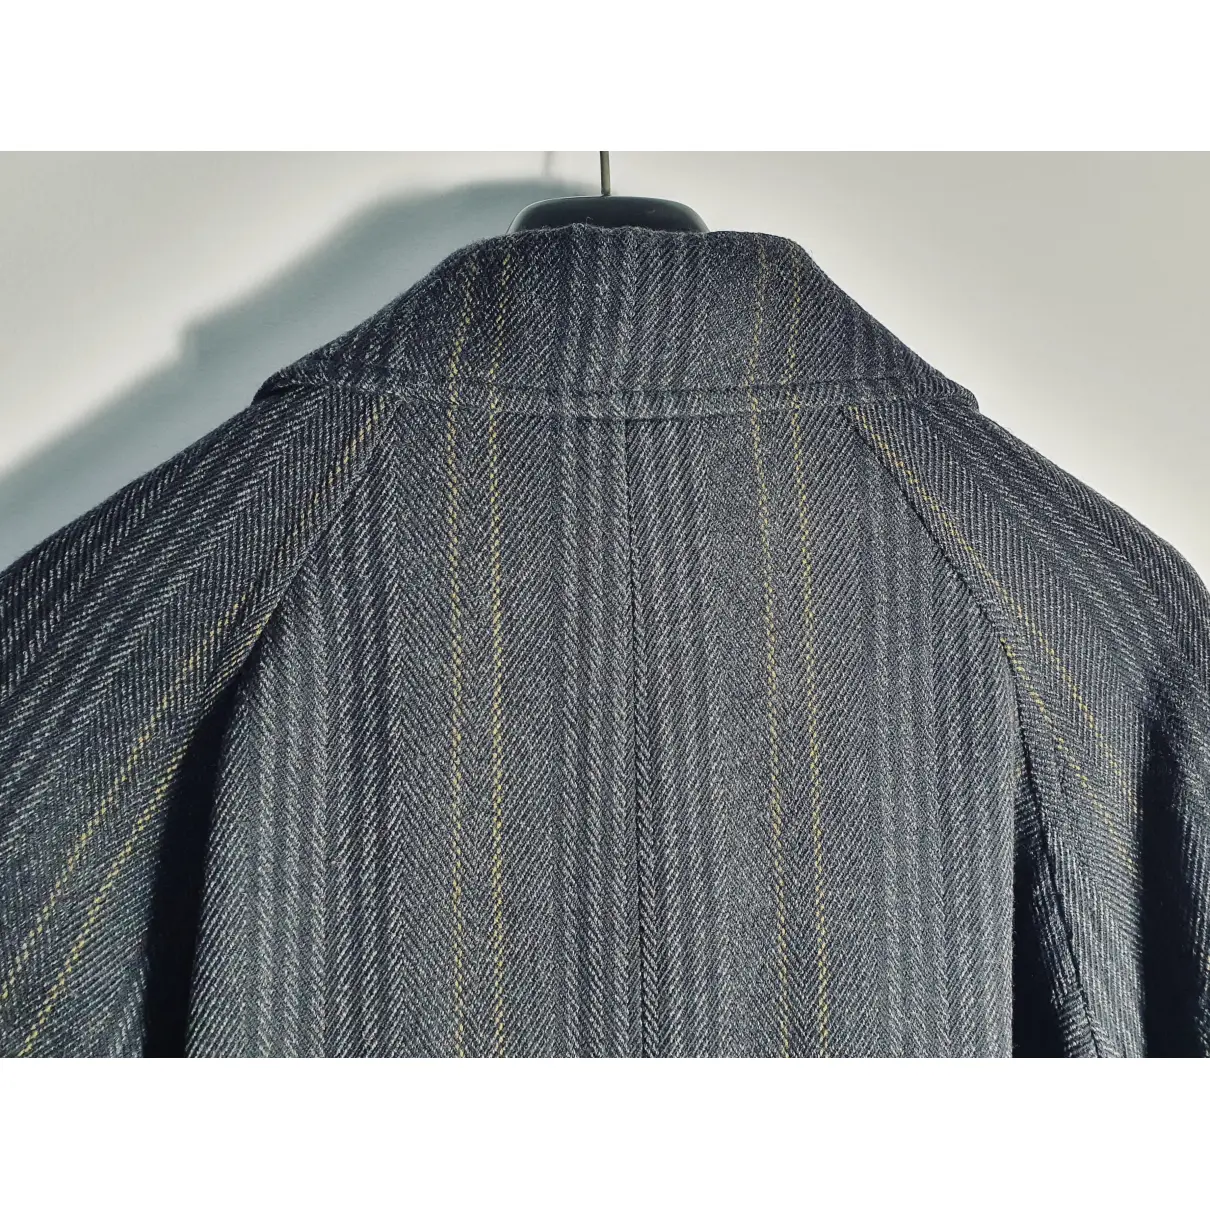 Wool coat Callaghan - Vintage